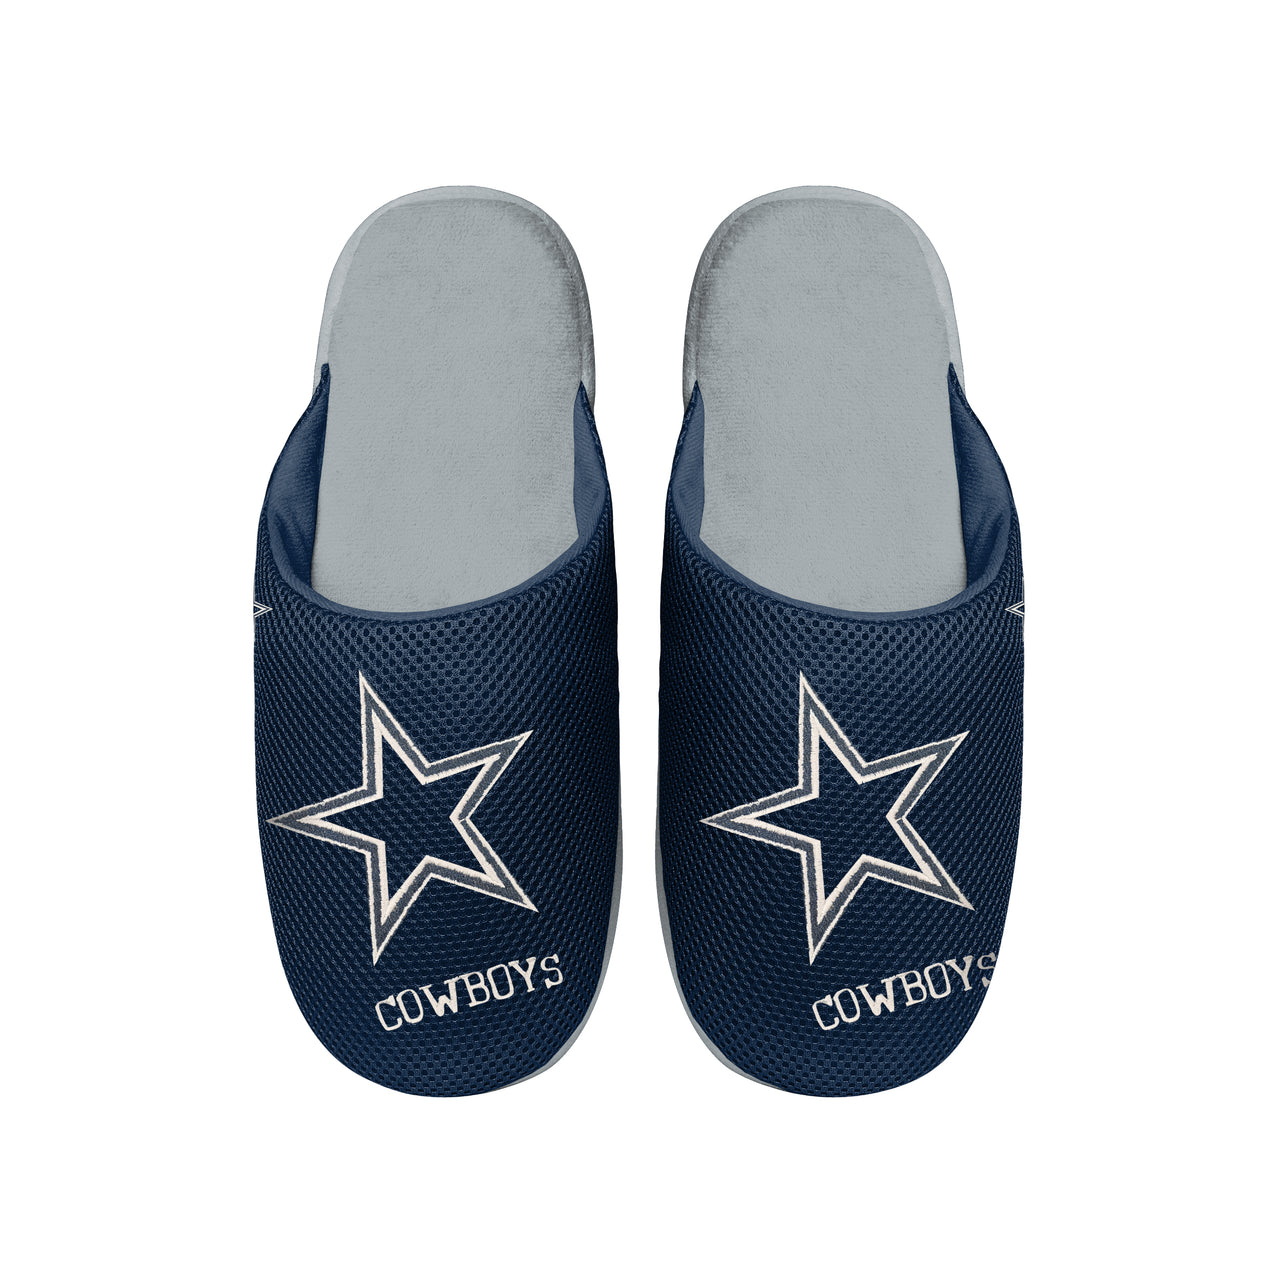 https://www.shopdynastysports.com/cdn/shop/products/CowboysMeshSlippers.jpg?v=1668132842&width=1280